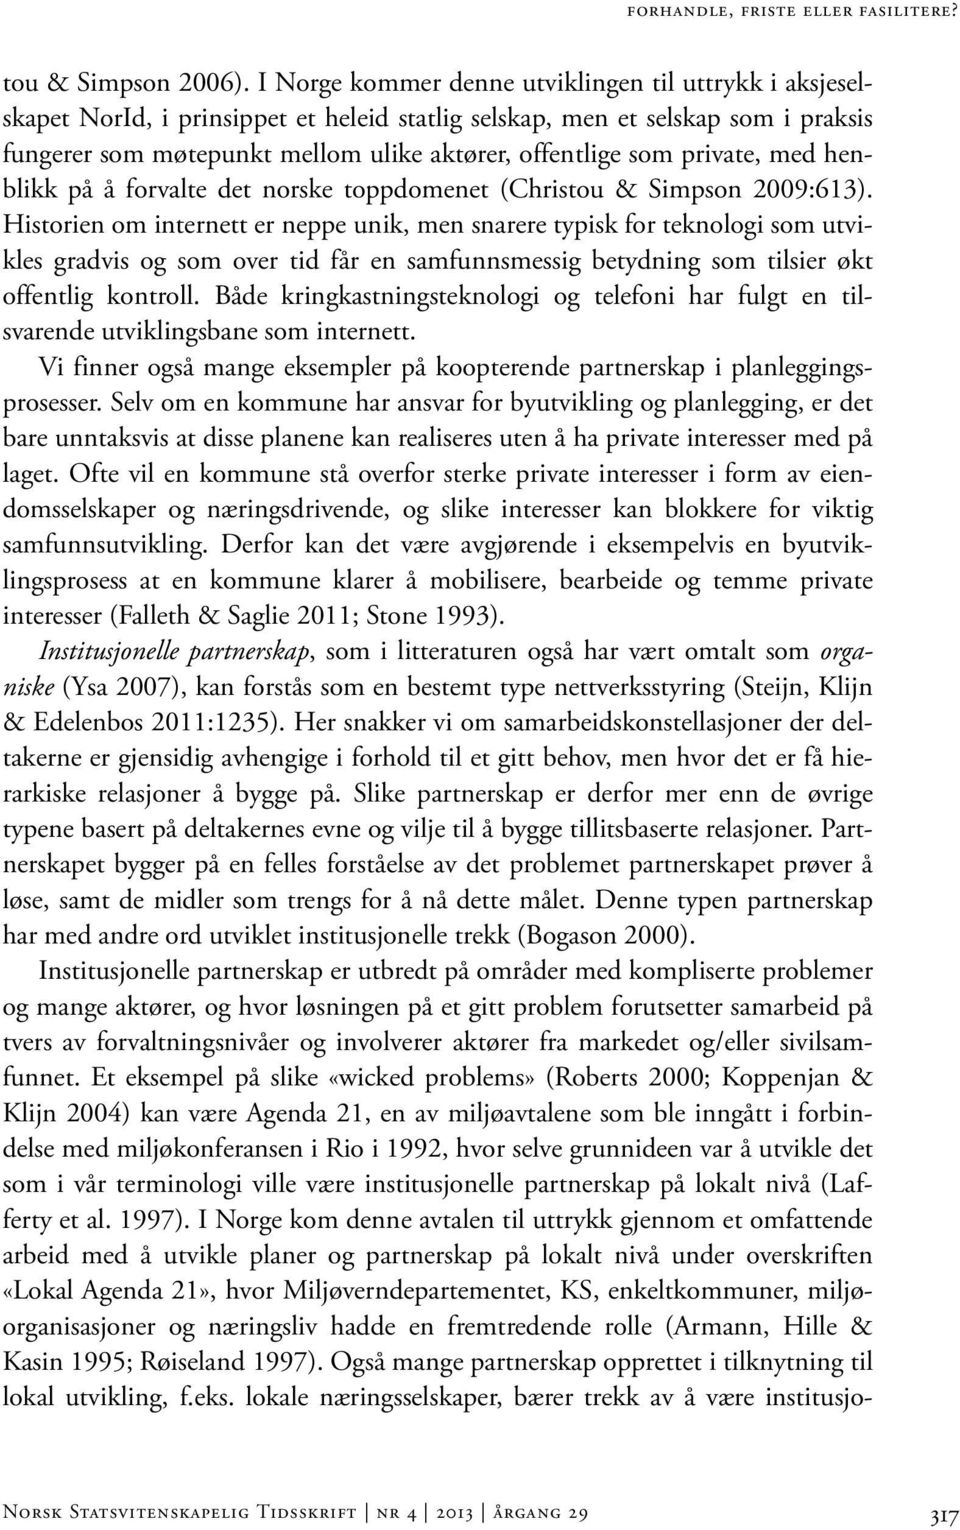 private, med henblikk på å forvalte det norske toppdomenet (Christou & Simpson 2009:613).